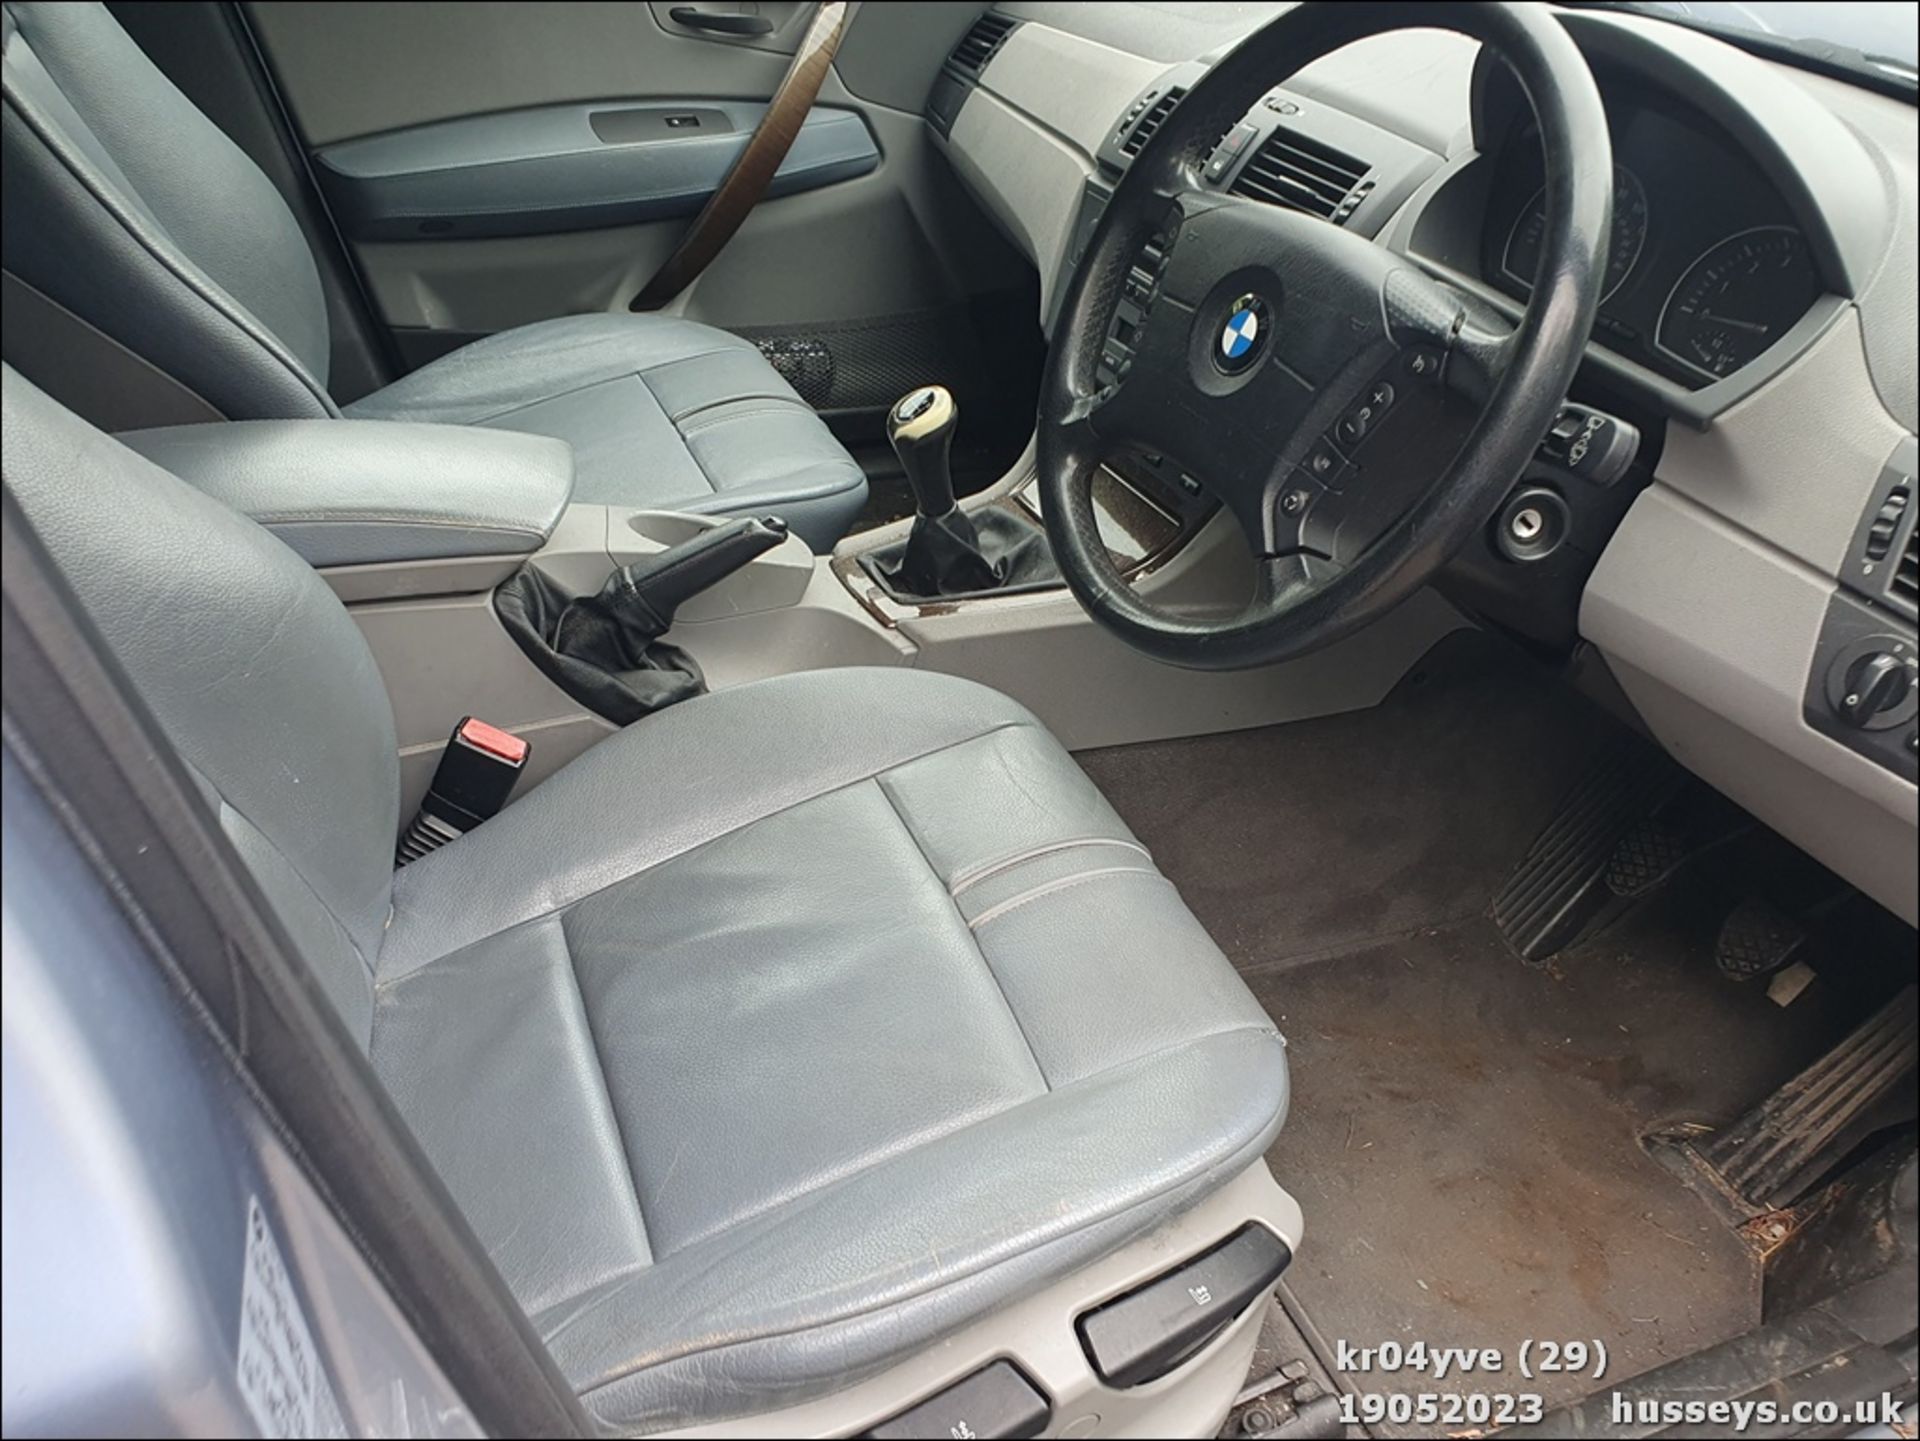 04/04 BMW X3 SE - 2494cc 5dr Estate (Blue, 147k) - Image 29 of 39